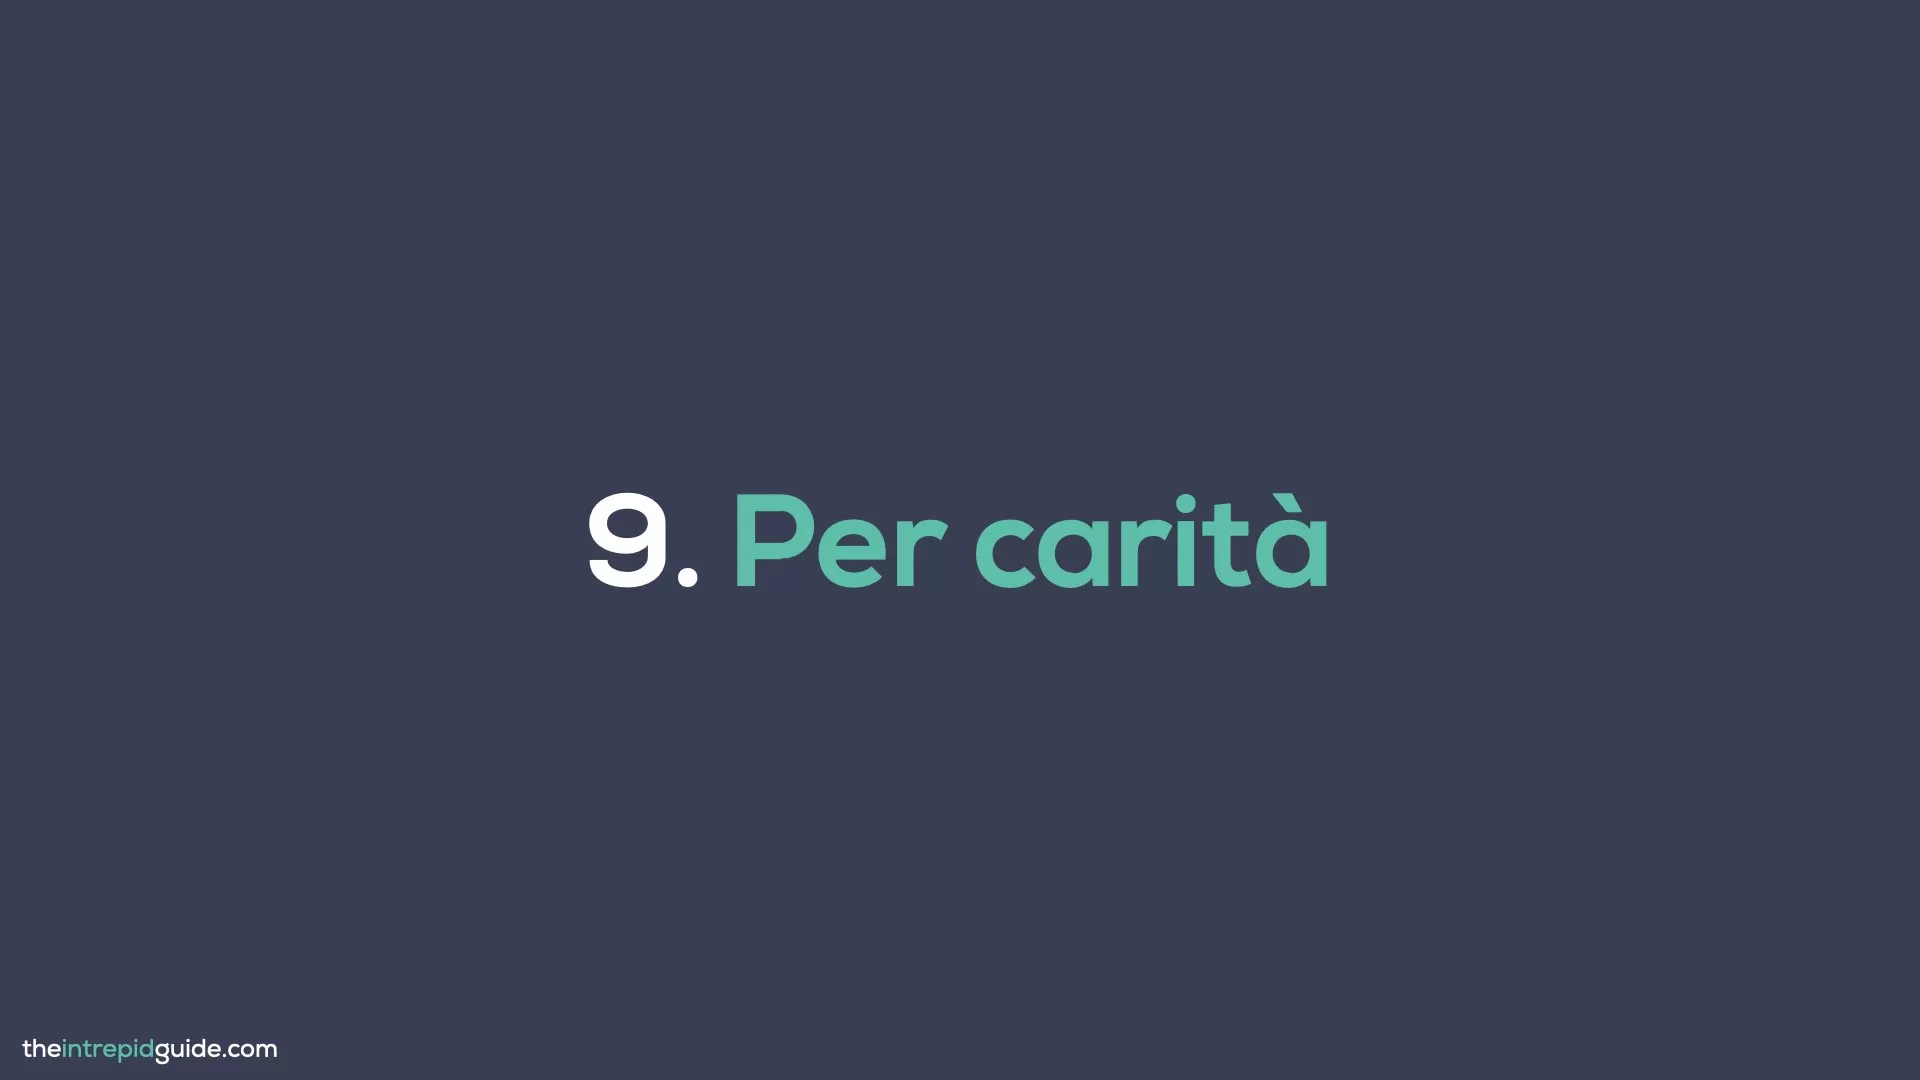 How to say Please in Italian - Per carità